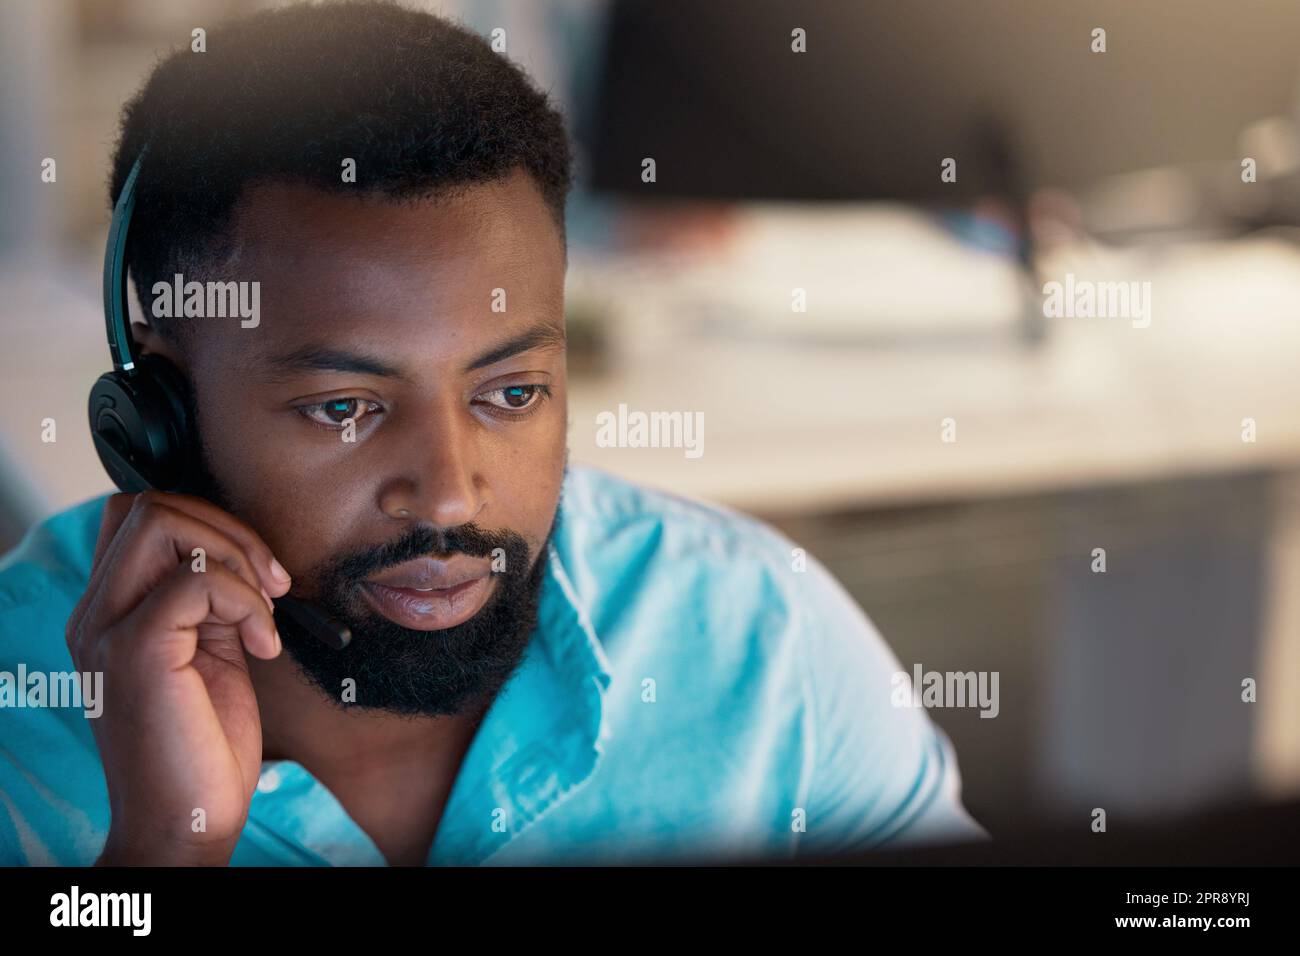 Ein junger afroamerikanischer Callcenter-Telemarketing-Agent, der während der Arbeit in einem Büro mit einem Headset spricht. Fokussierter Geschäftsberater, der einen Helpdesk für den Kundendienst betreibt Stockfoto